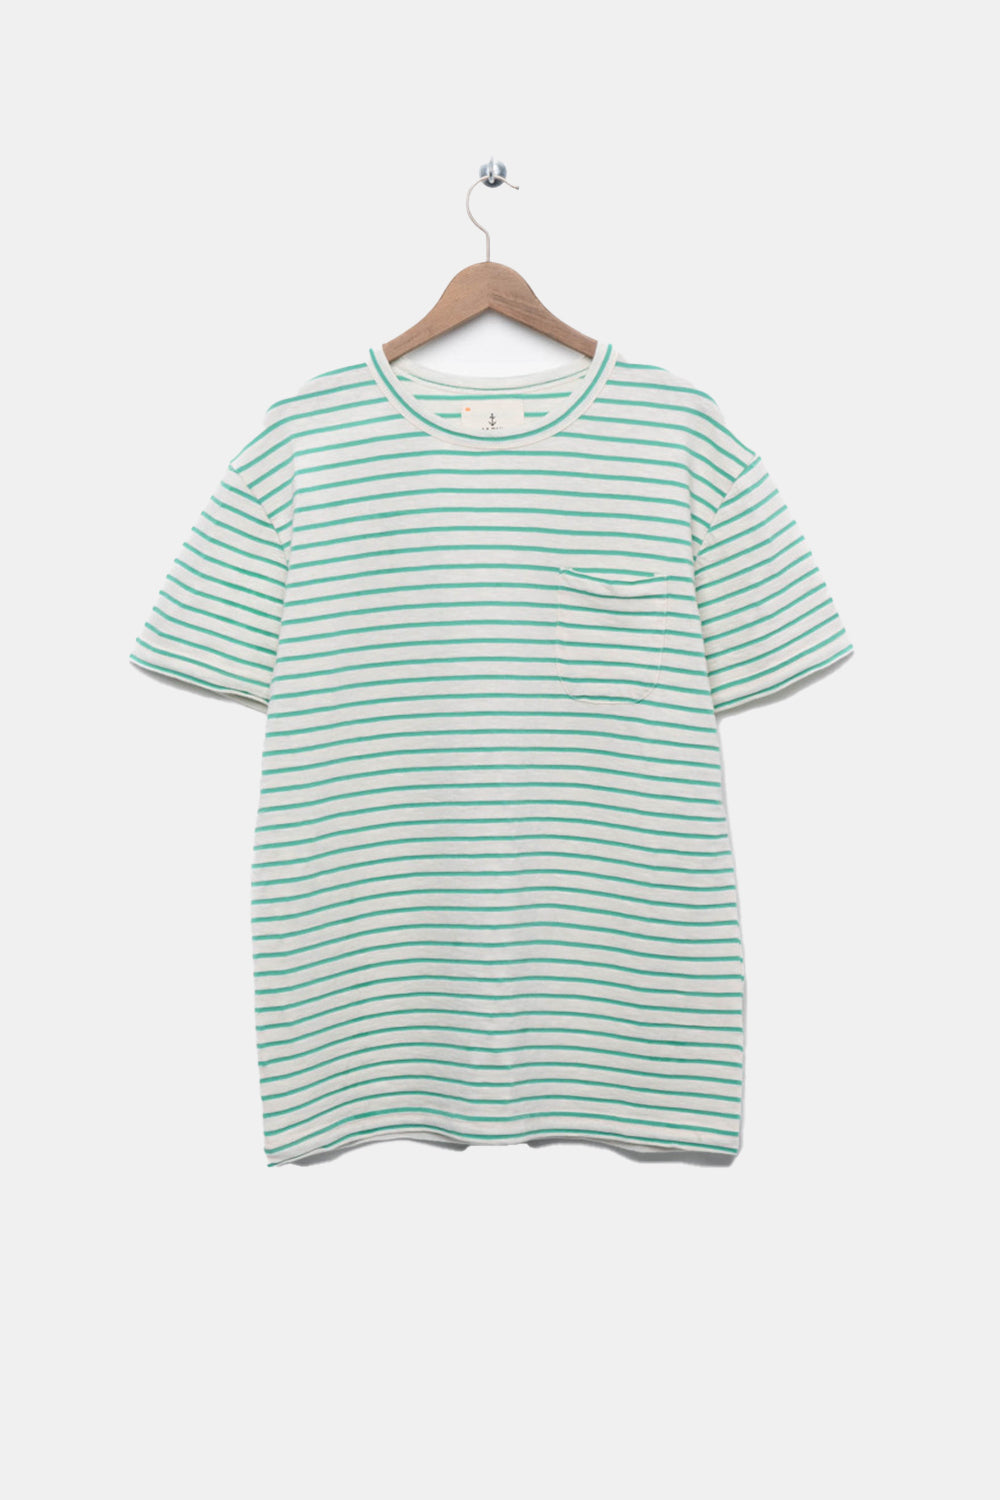 La Paz Guerreiro T-Shirt (Off-White/Gumdrop Green) | Number Six